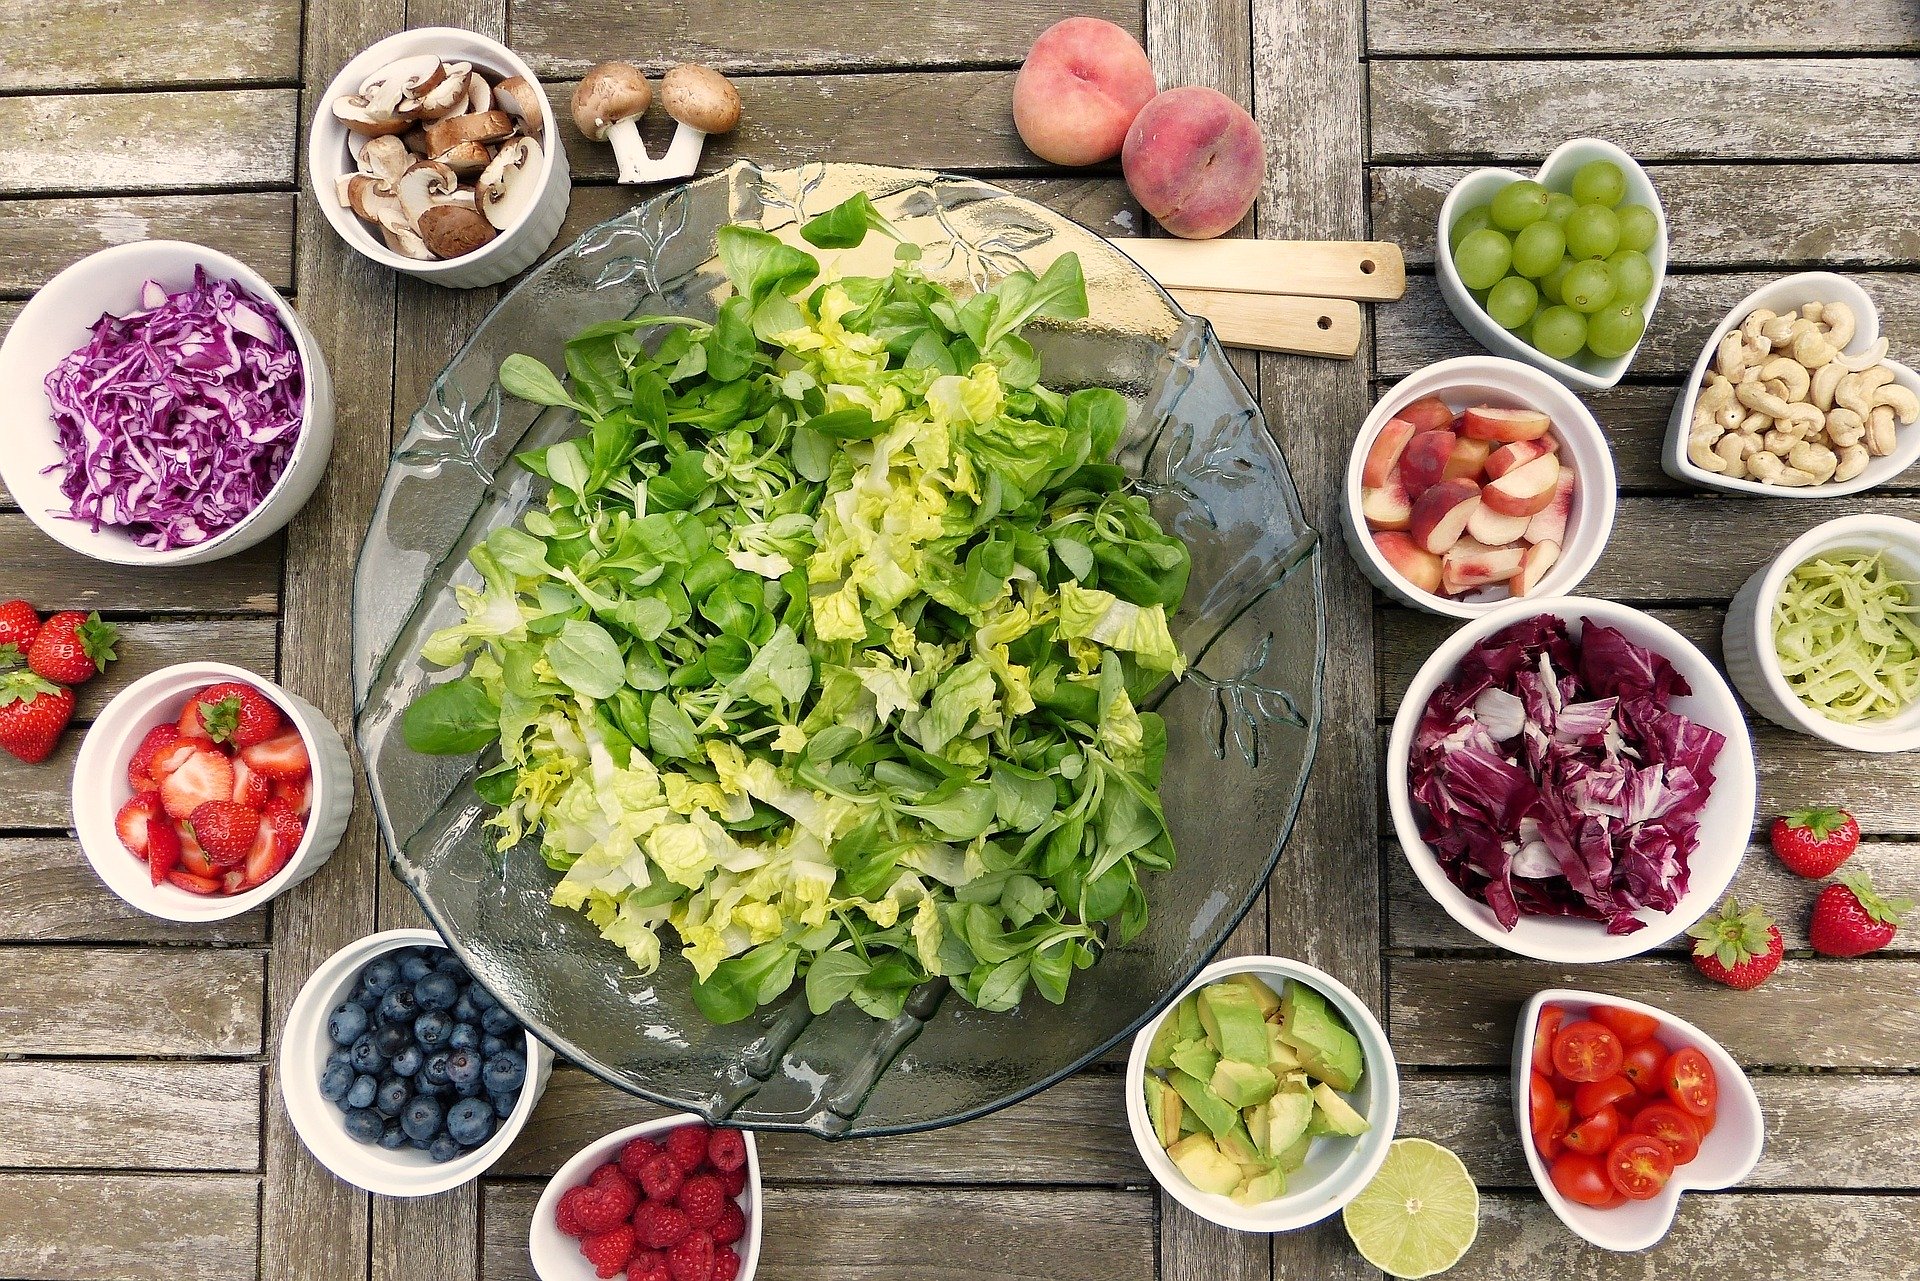 Components of a salad.